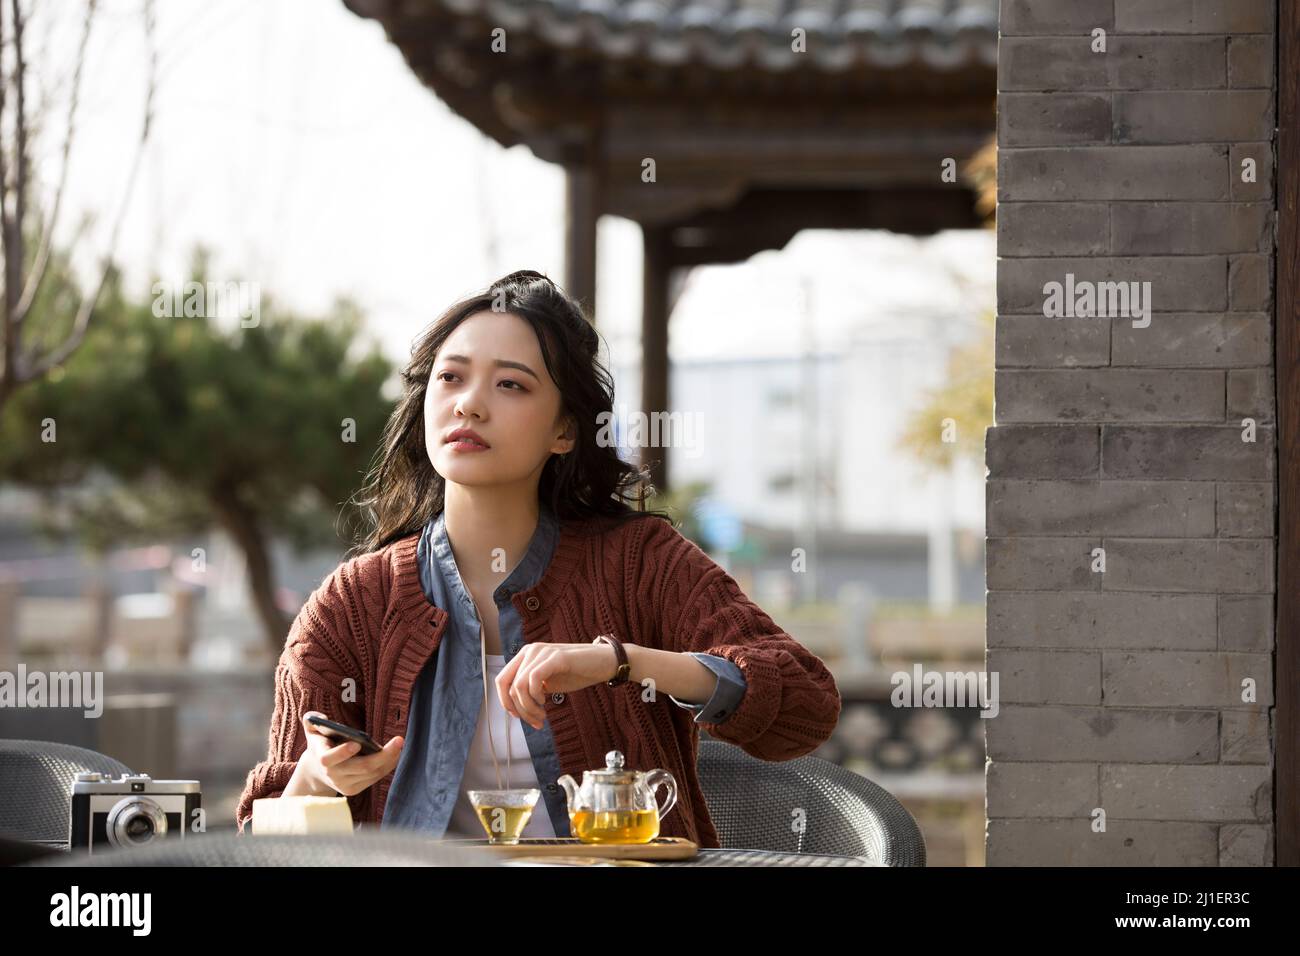 Chinesische College-Student ruft Freund und genießen Nachmittagstee im Bürgersteig Café - Stock Foto Stockfoto